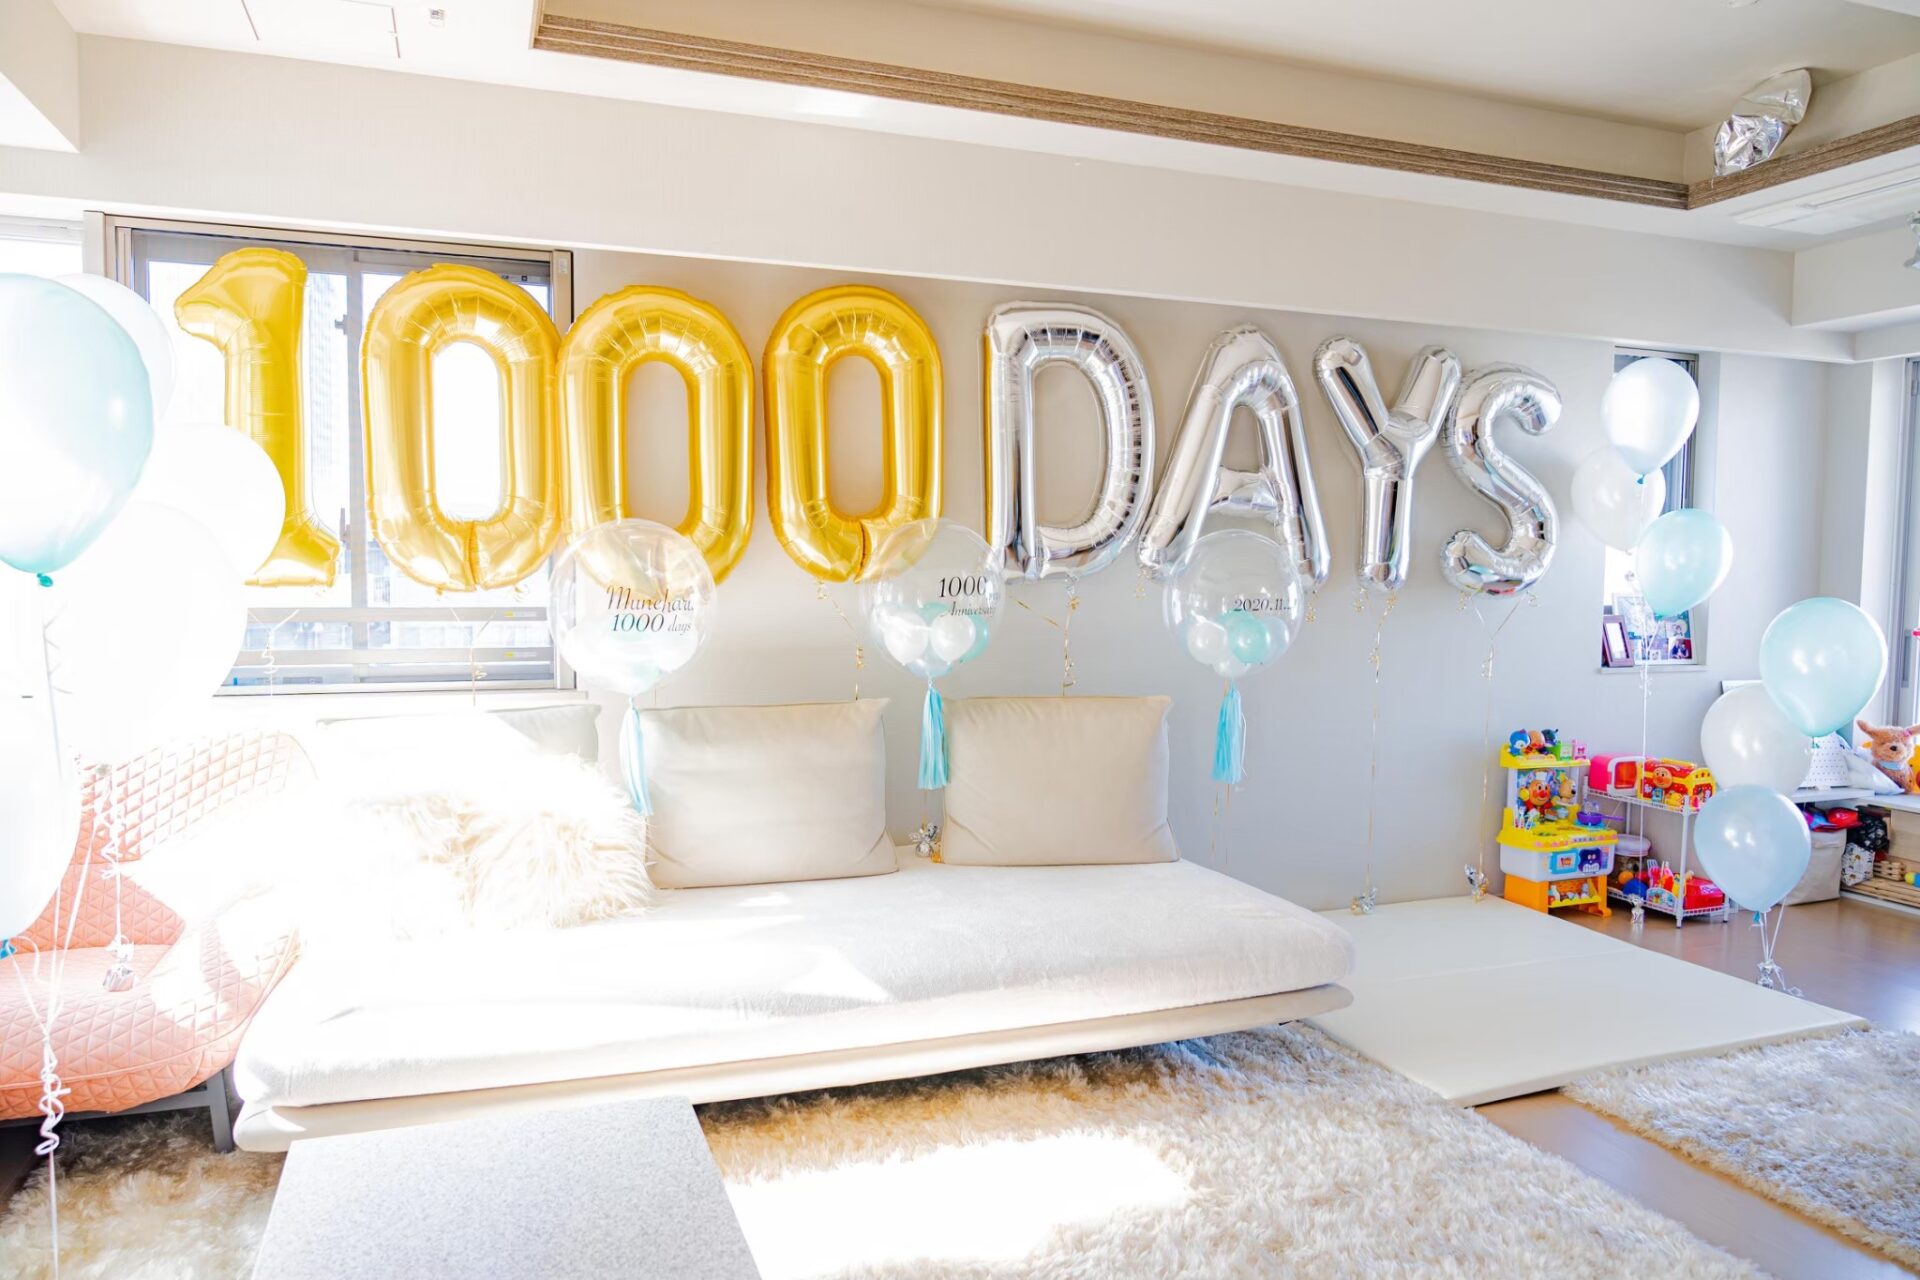 与你的家人一起庆祝出生后的第1000天。